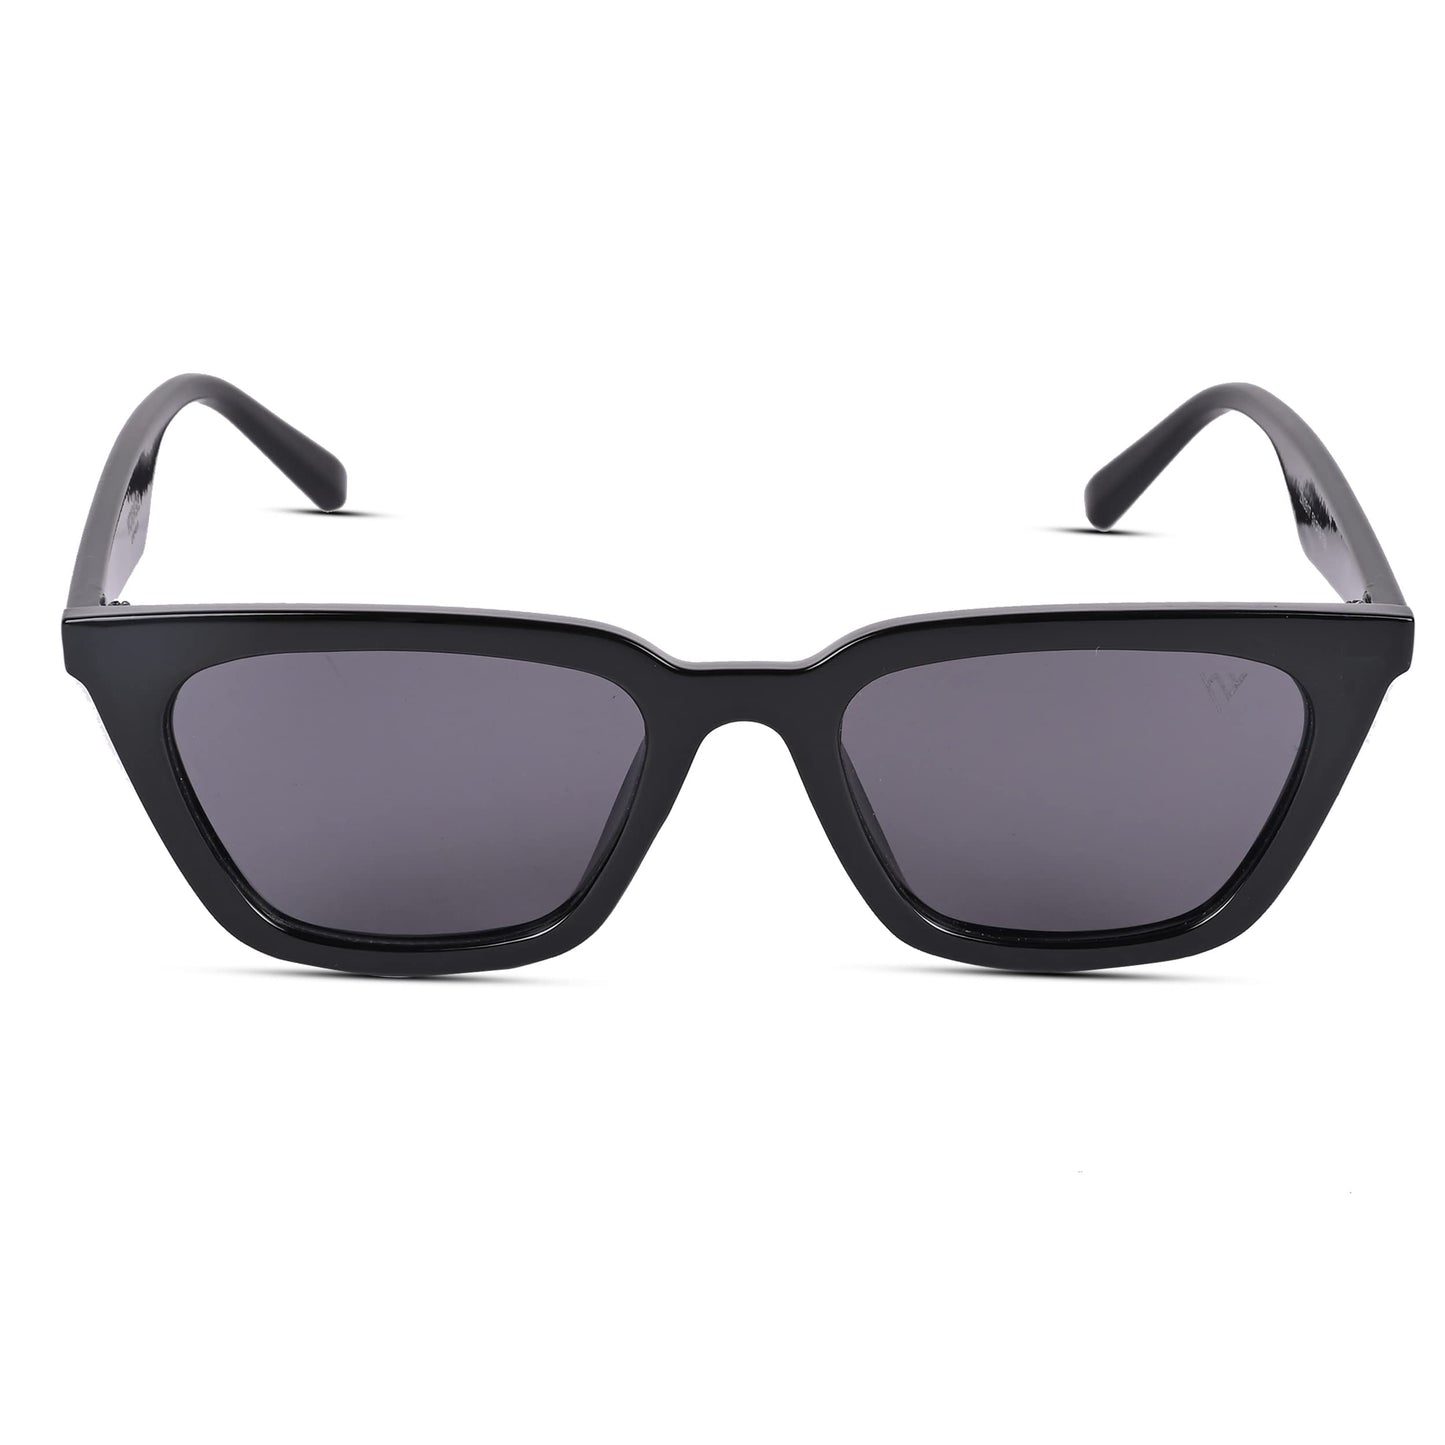 Voyage UV Protection Black Cat-Eye Sunglasses for Women (3517MG3761 | Black Frame | Black Lens)